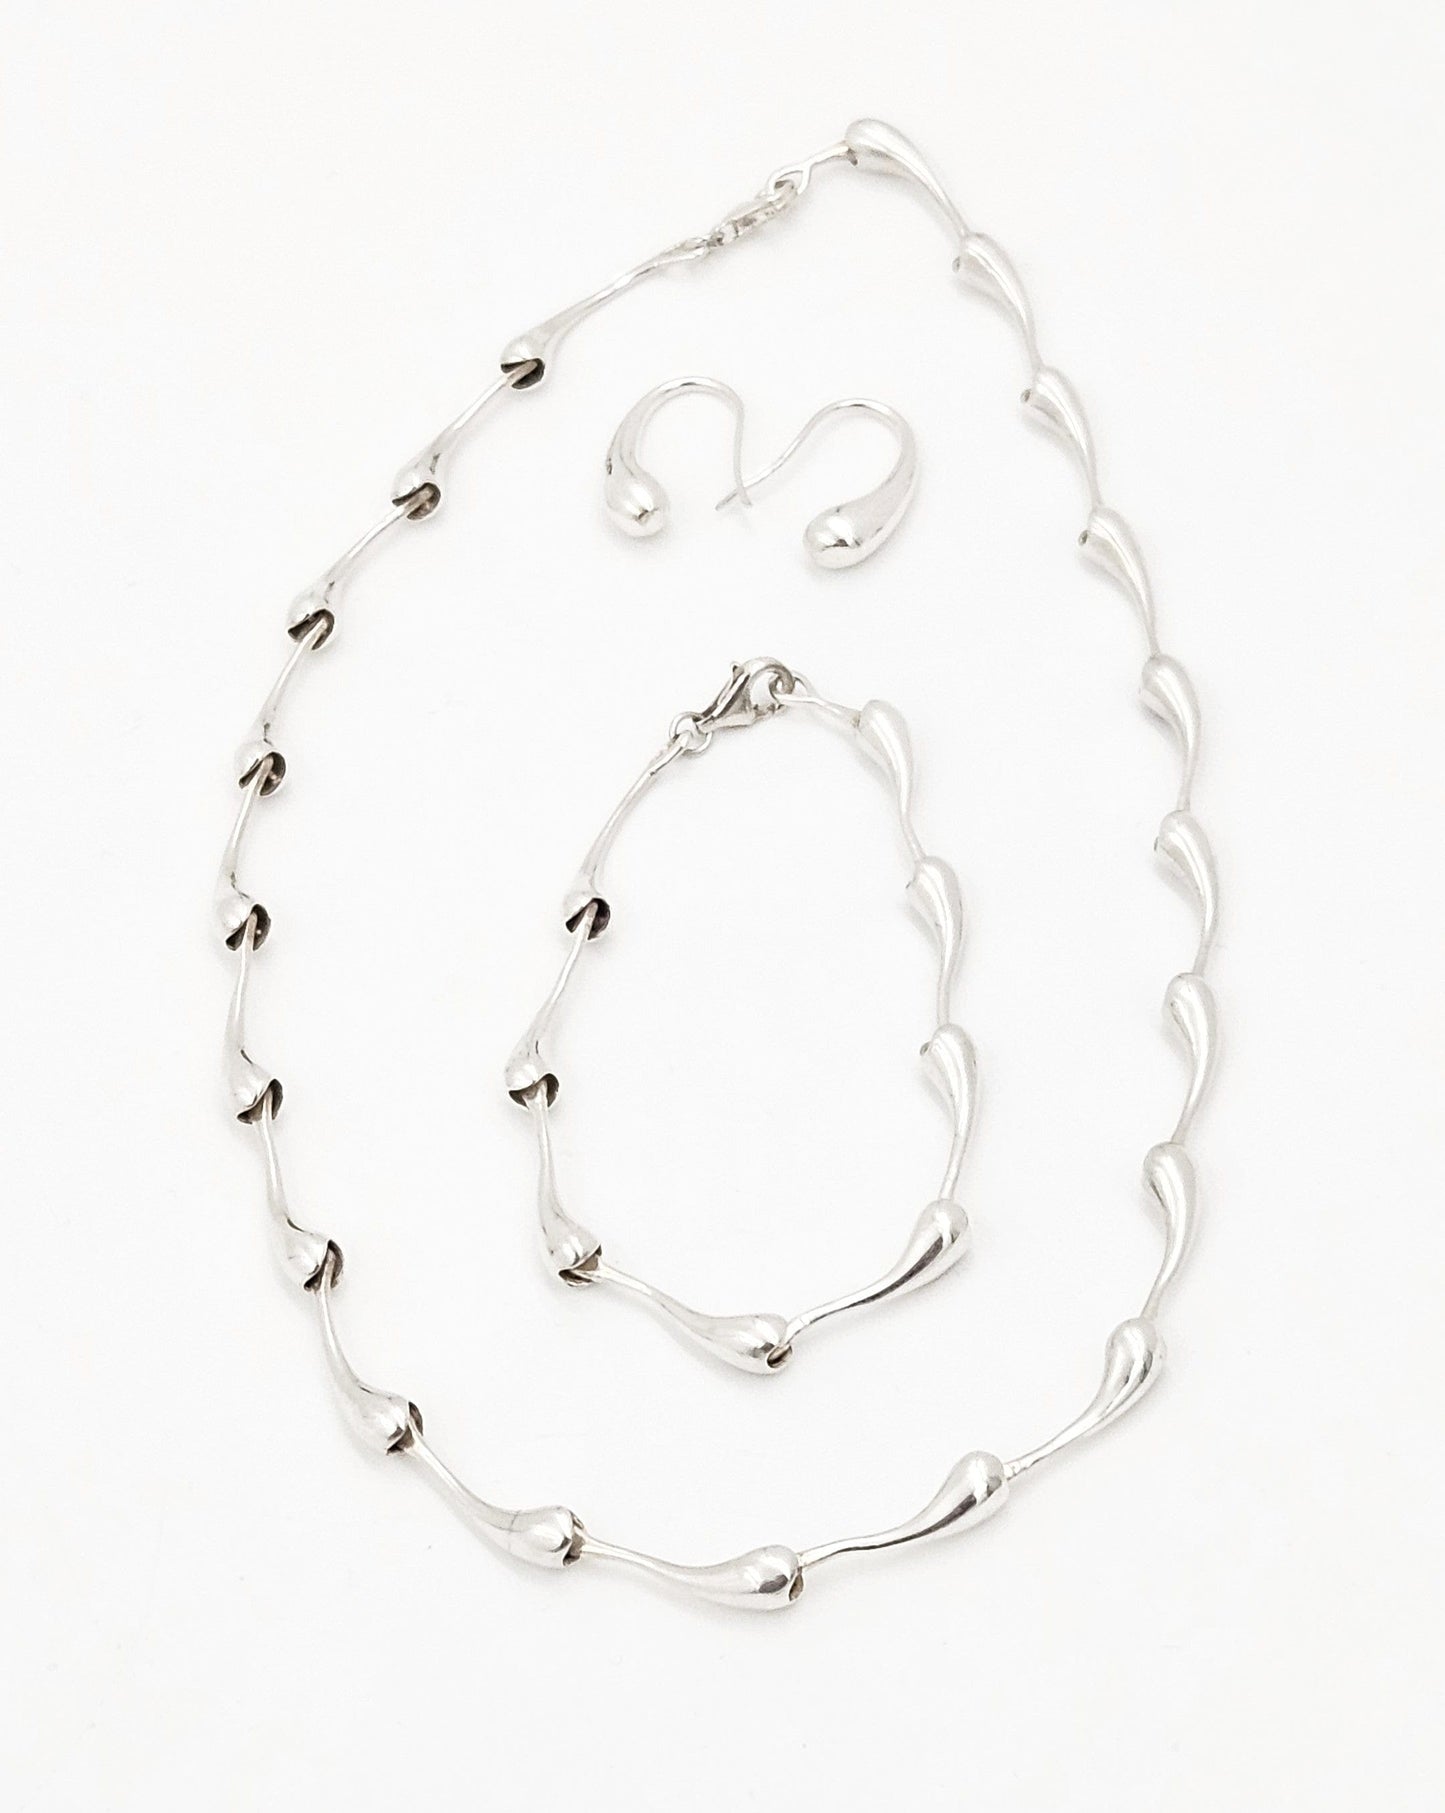 TMCMH Jewelry Sterling Necklace Bracelet Earrings SET